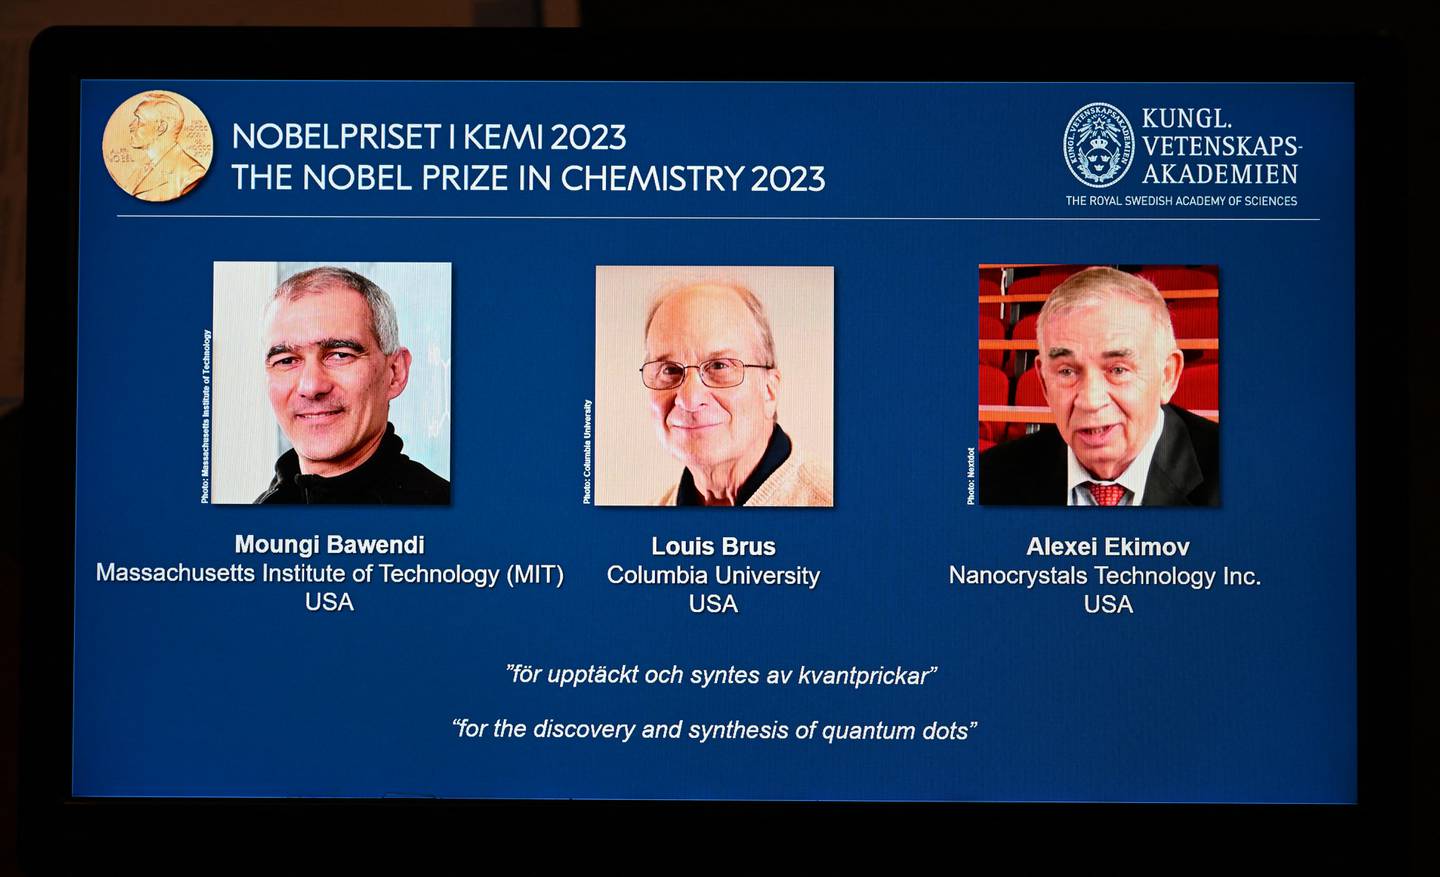 Una tableta muestra a los galardonados de este año, el químico estadounidense Moungi Bawendi, el químico estadounidense Louis Brus y el físico ruso Alexei Ekimov, durante el anuncio de los ganadores del Premio Nobel de Química